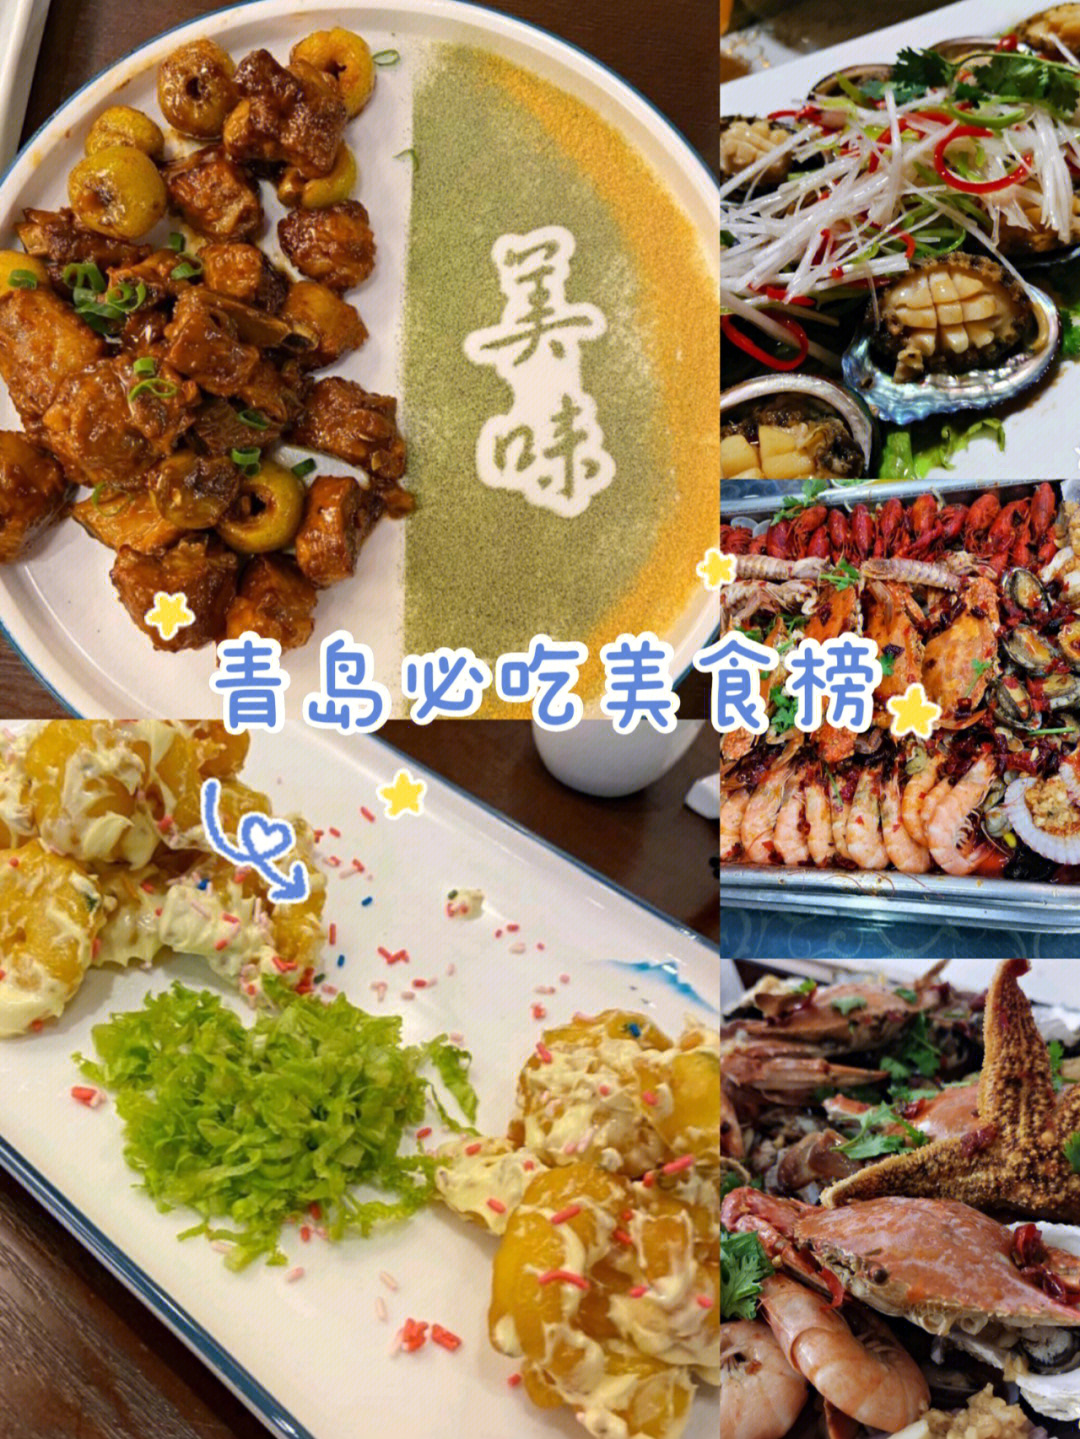 青岛美食排行榜前十名图片